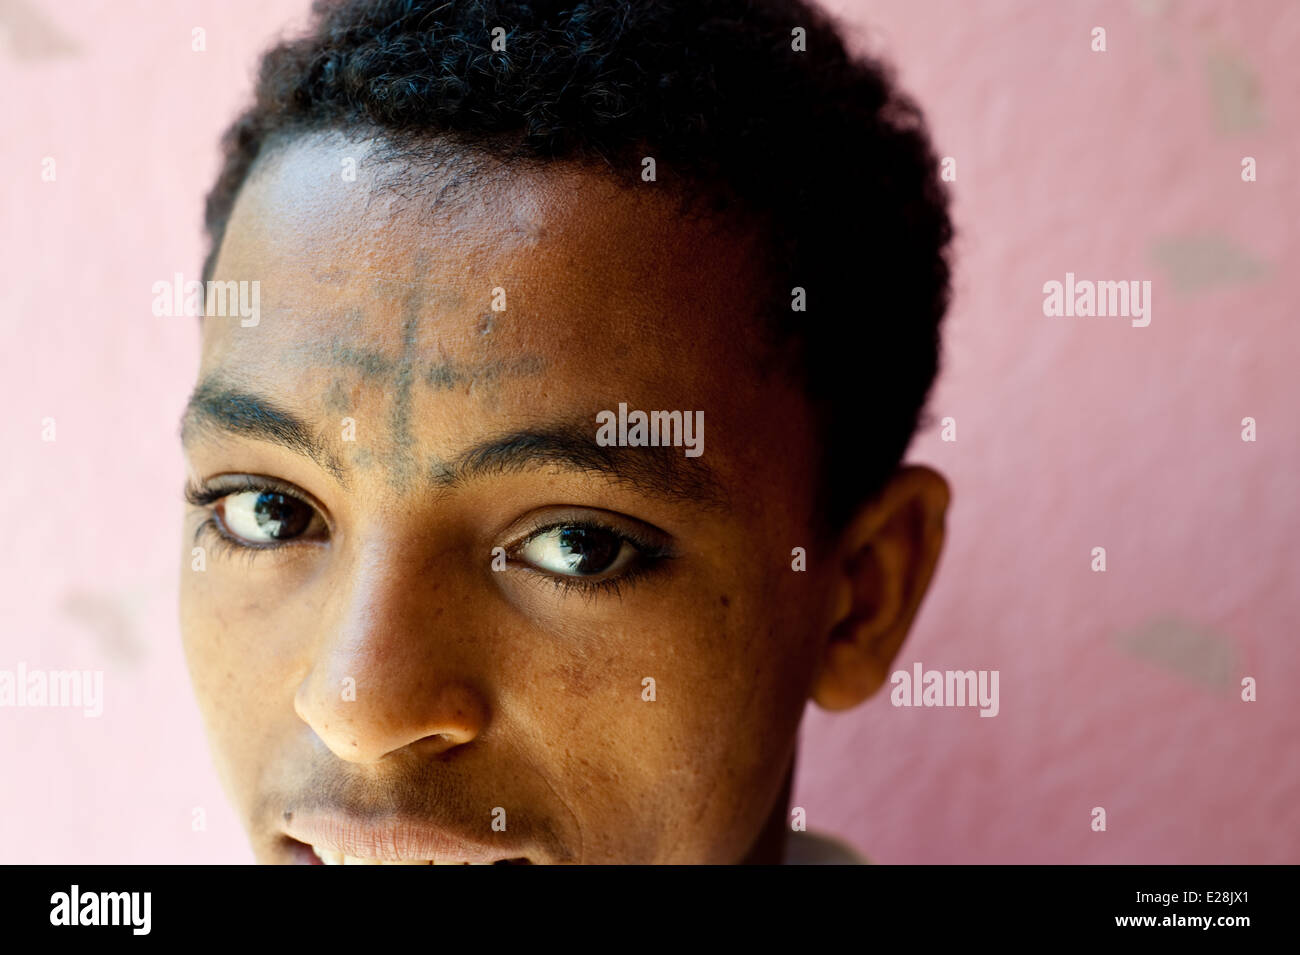 Garçon chrétien orthodoxe d'une croix tatoué sur son front ( Ethiopie) Banque D'Images